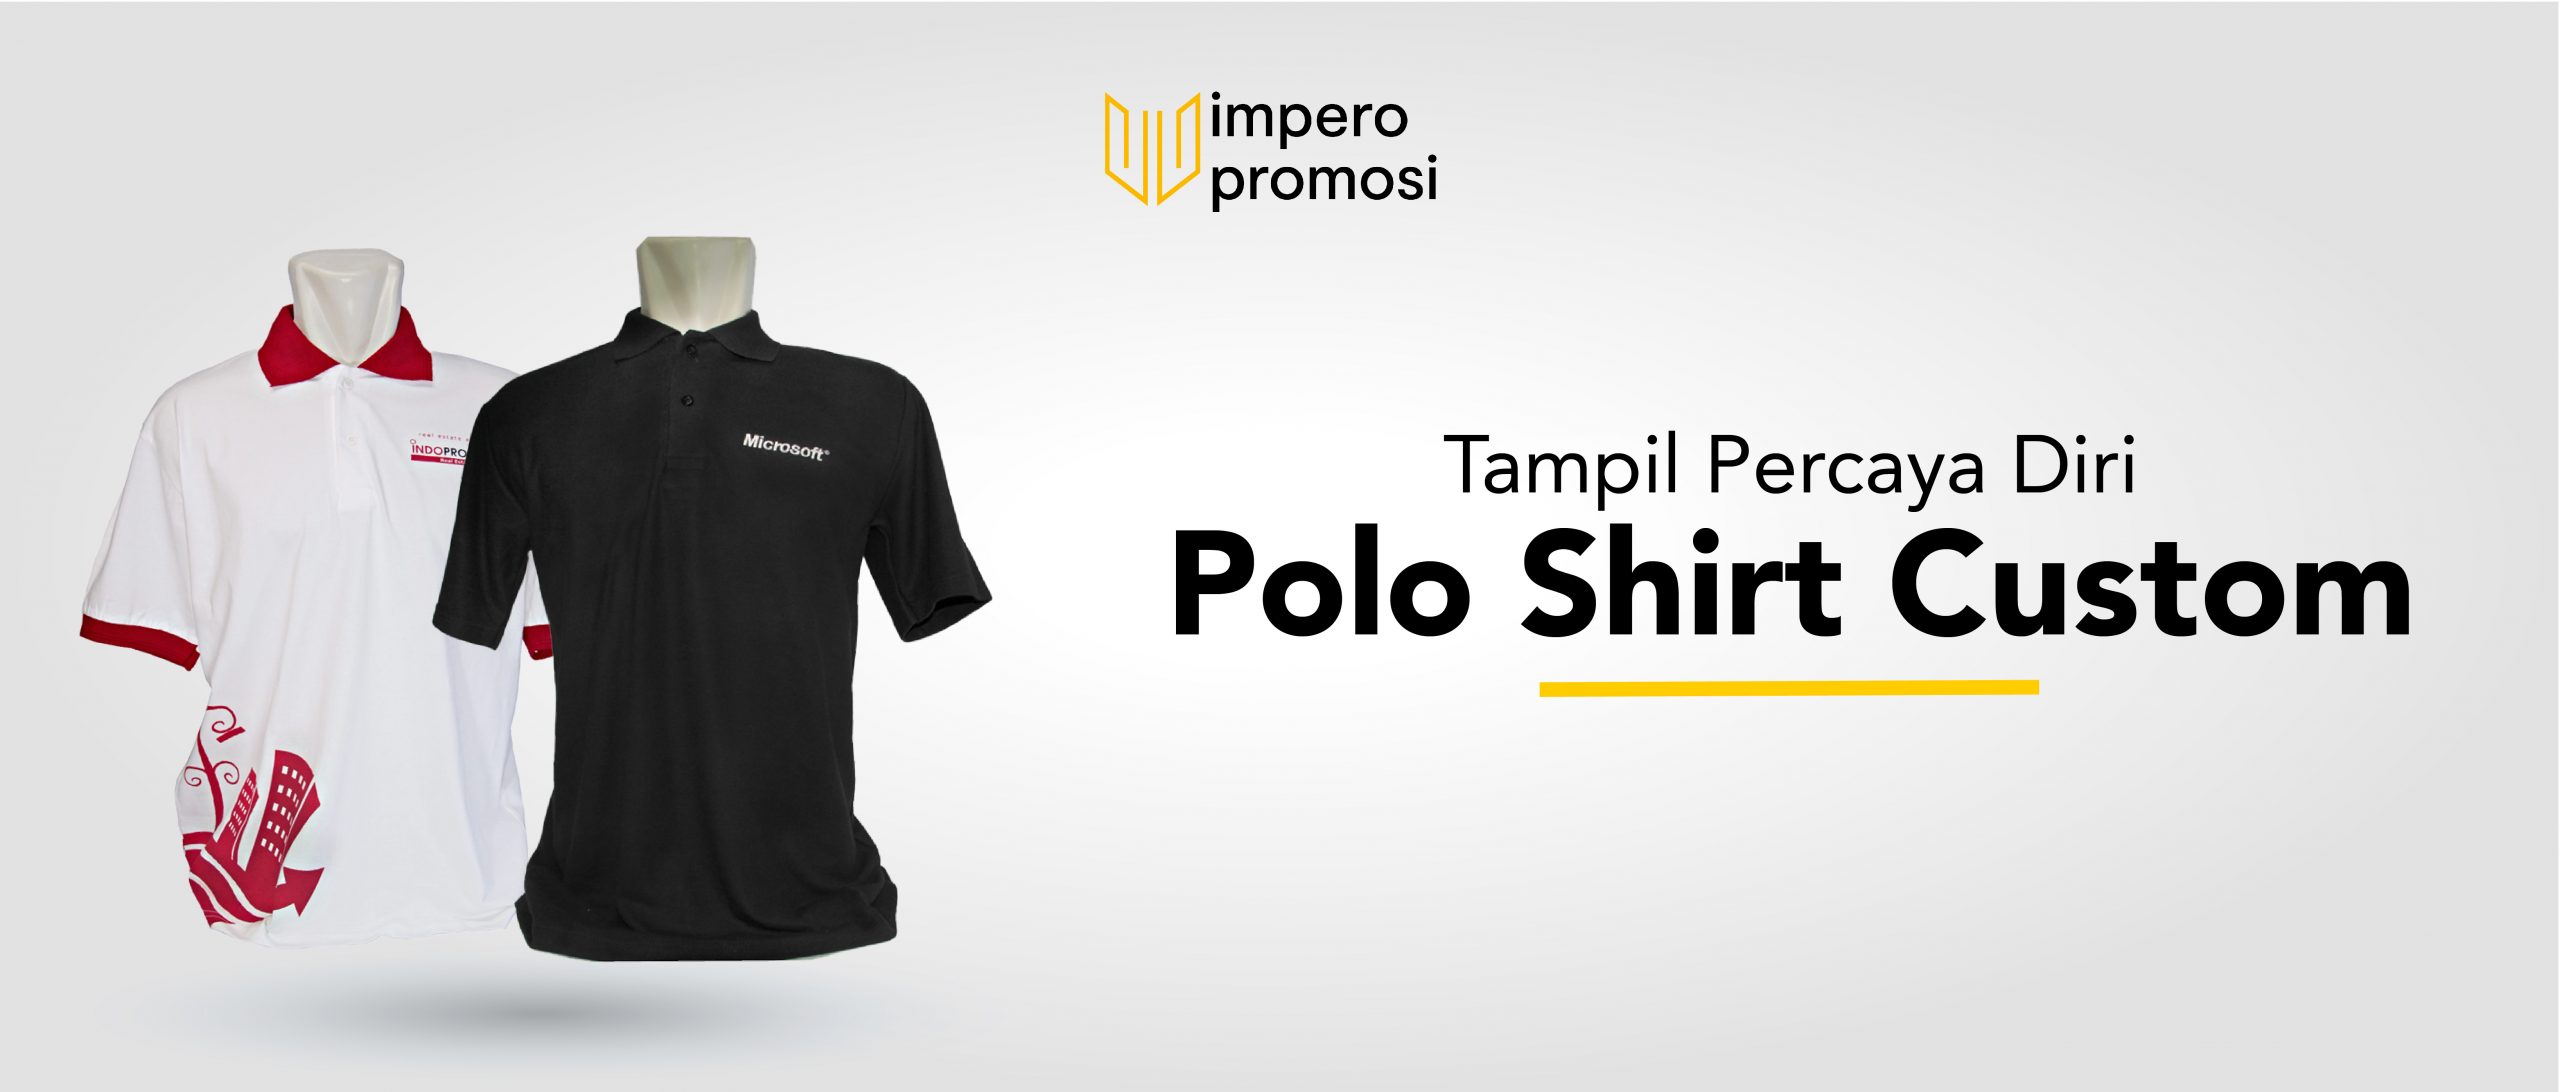 Polo Shirt Custom